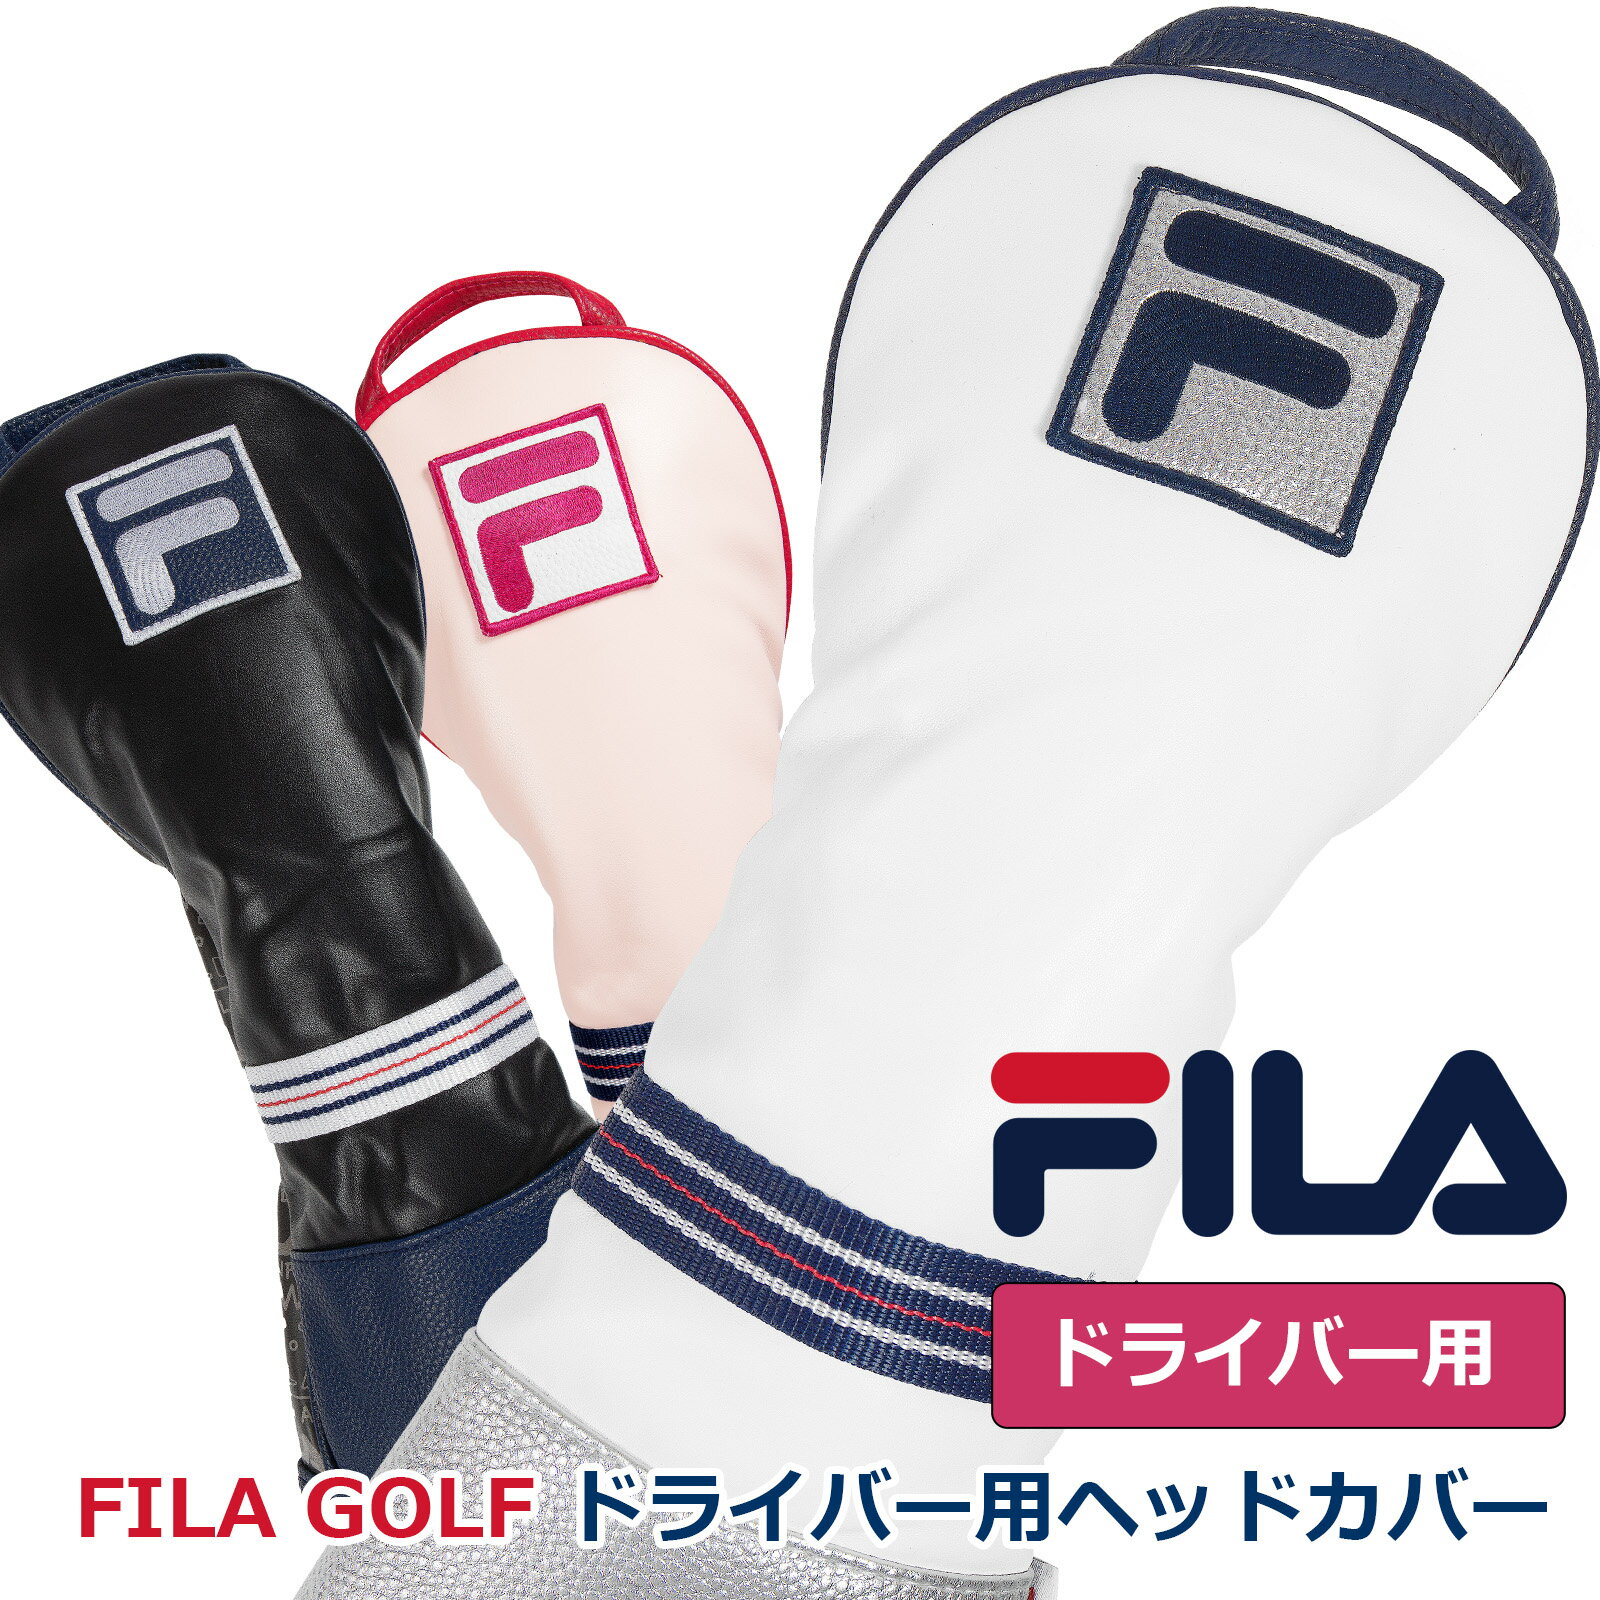 ゴルフ 有名ブランド FILA ドライバー用 クッション性のあるヘッドカバー メンズレディース兼用 もふもふのソフトな触り心地 ウッド ヘッド保護 シンプルなソックスタイプ かさ張らない シリー…